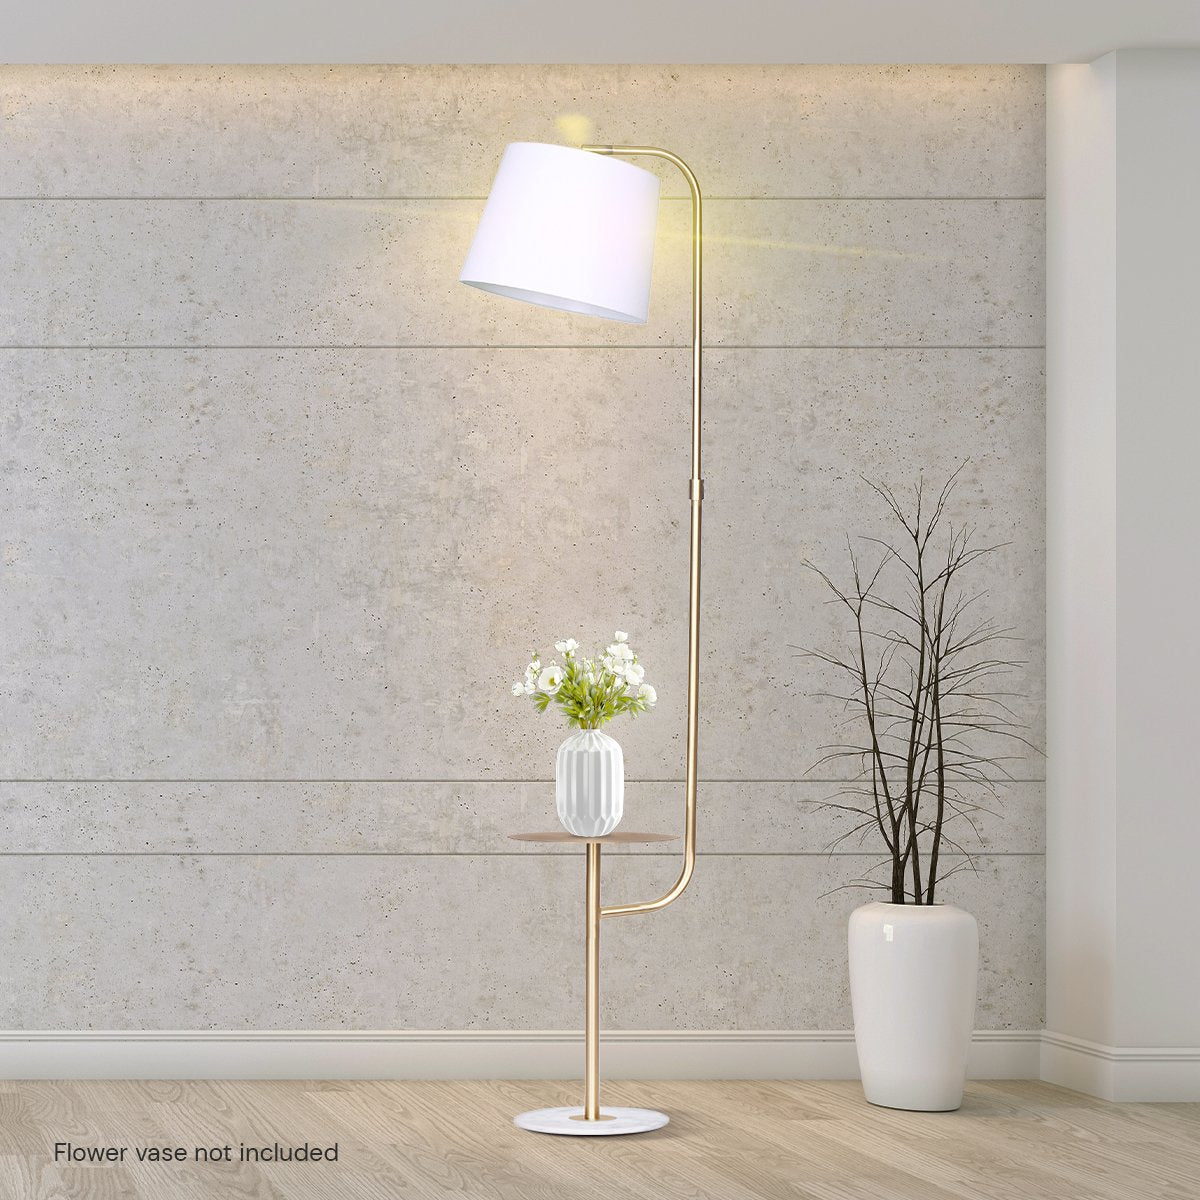 Marble & Metal End Table Top Floor Lamp